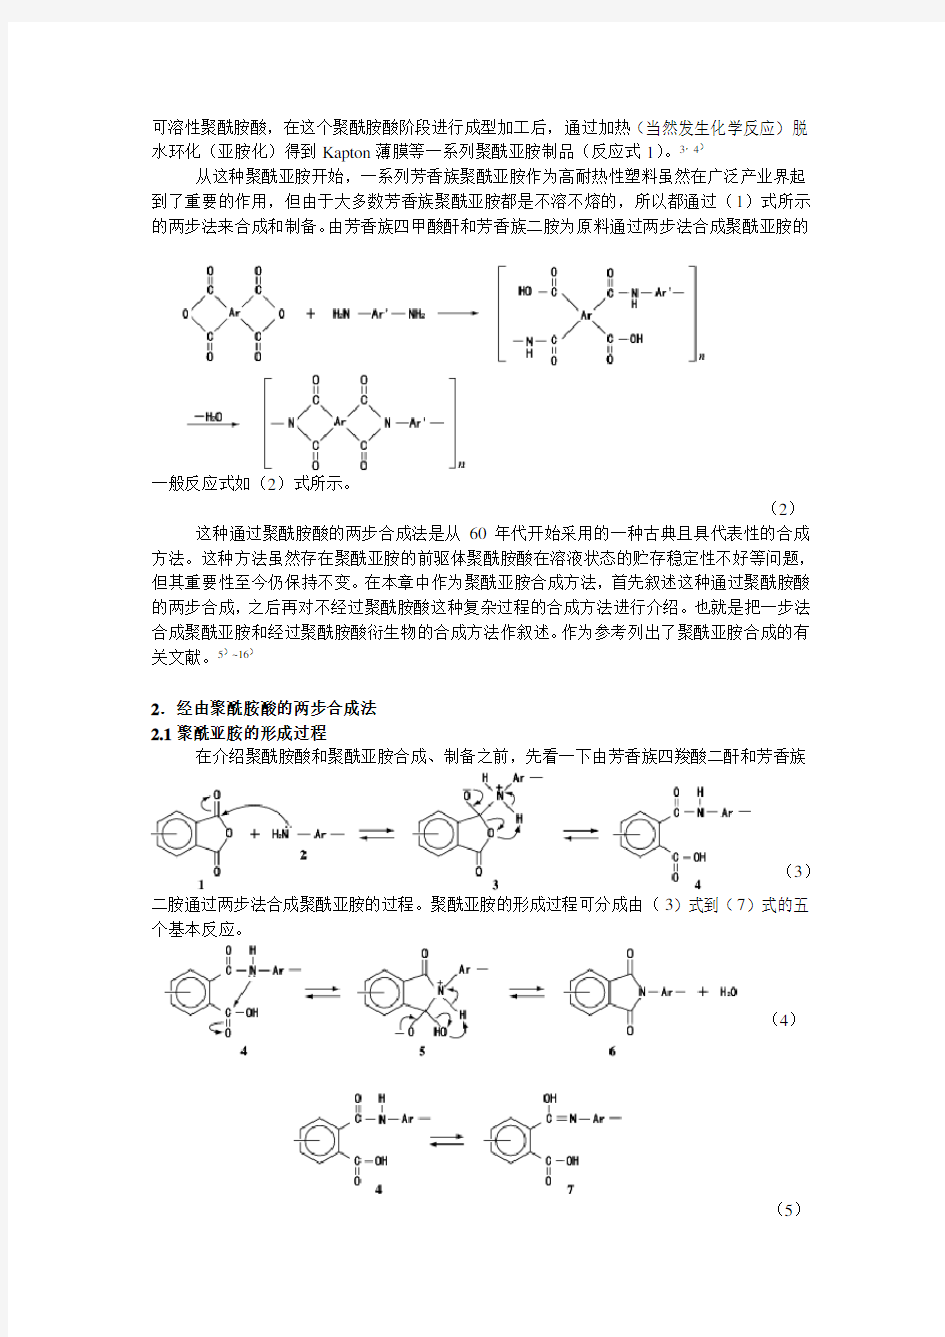 聚酰亚胺基础知识-1(横田力男)